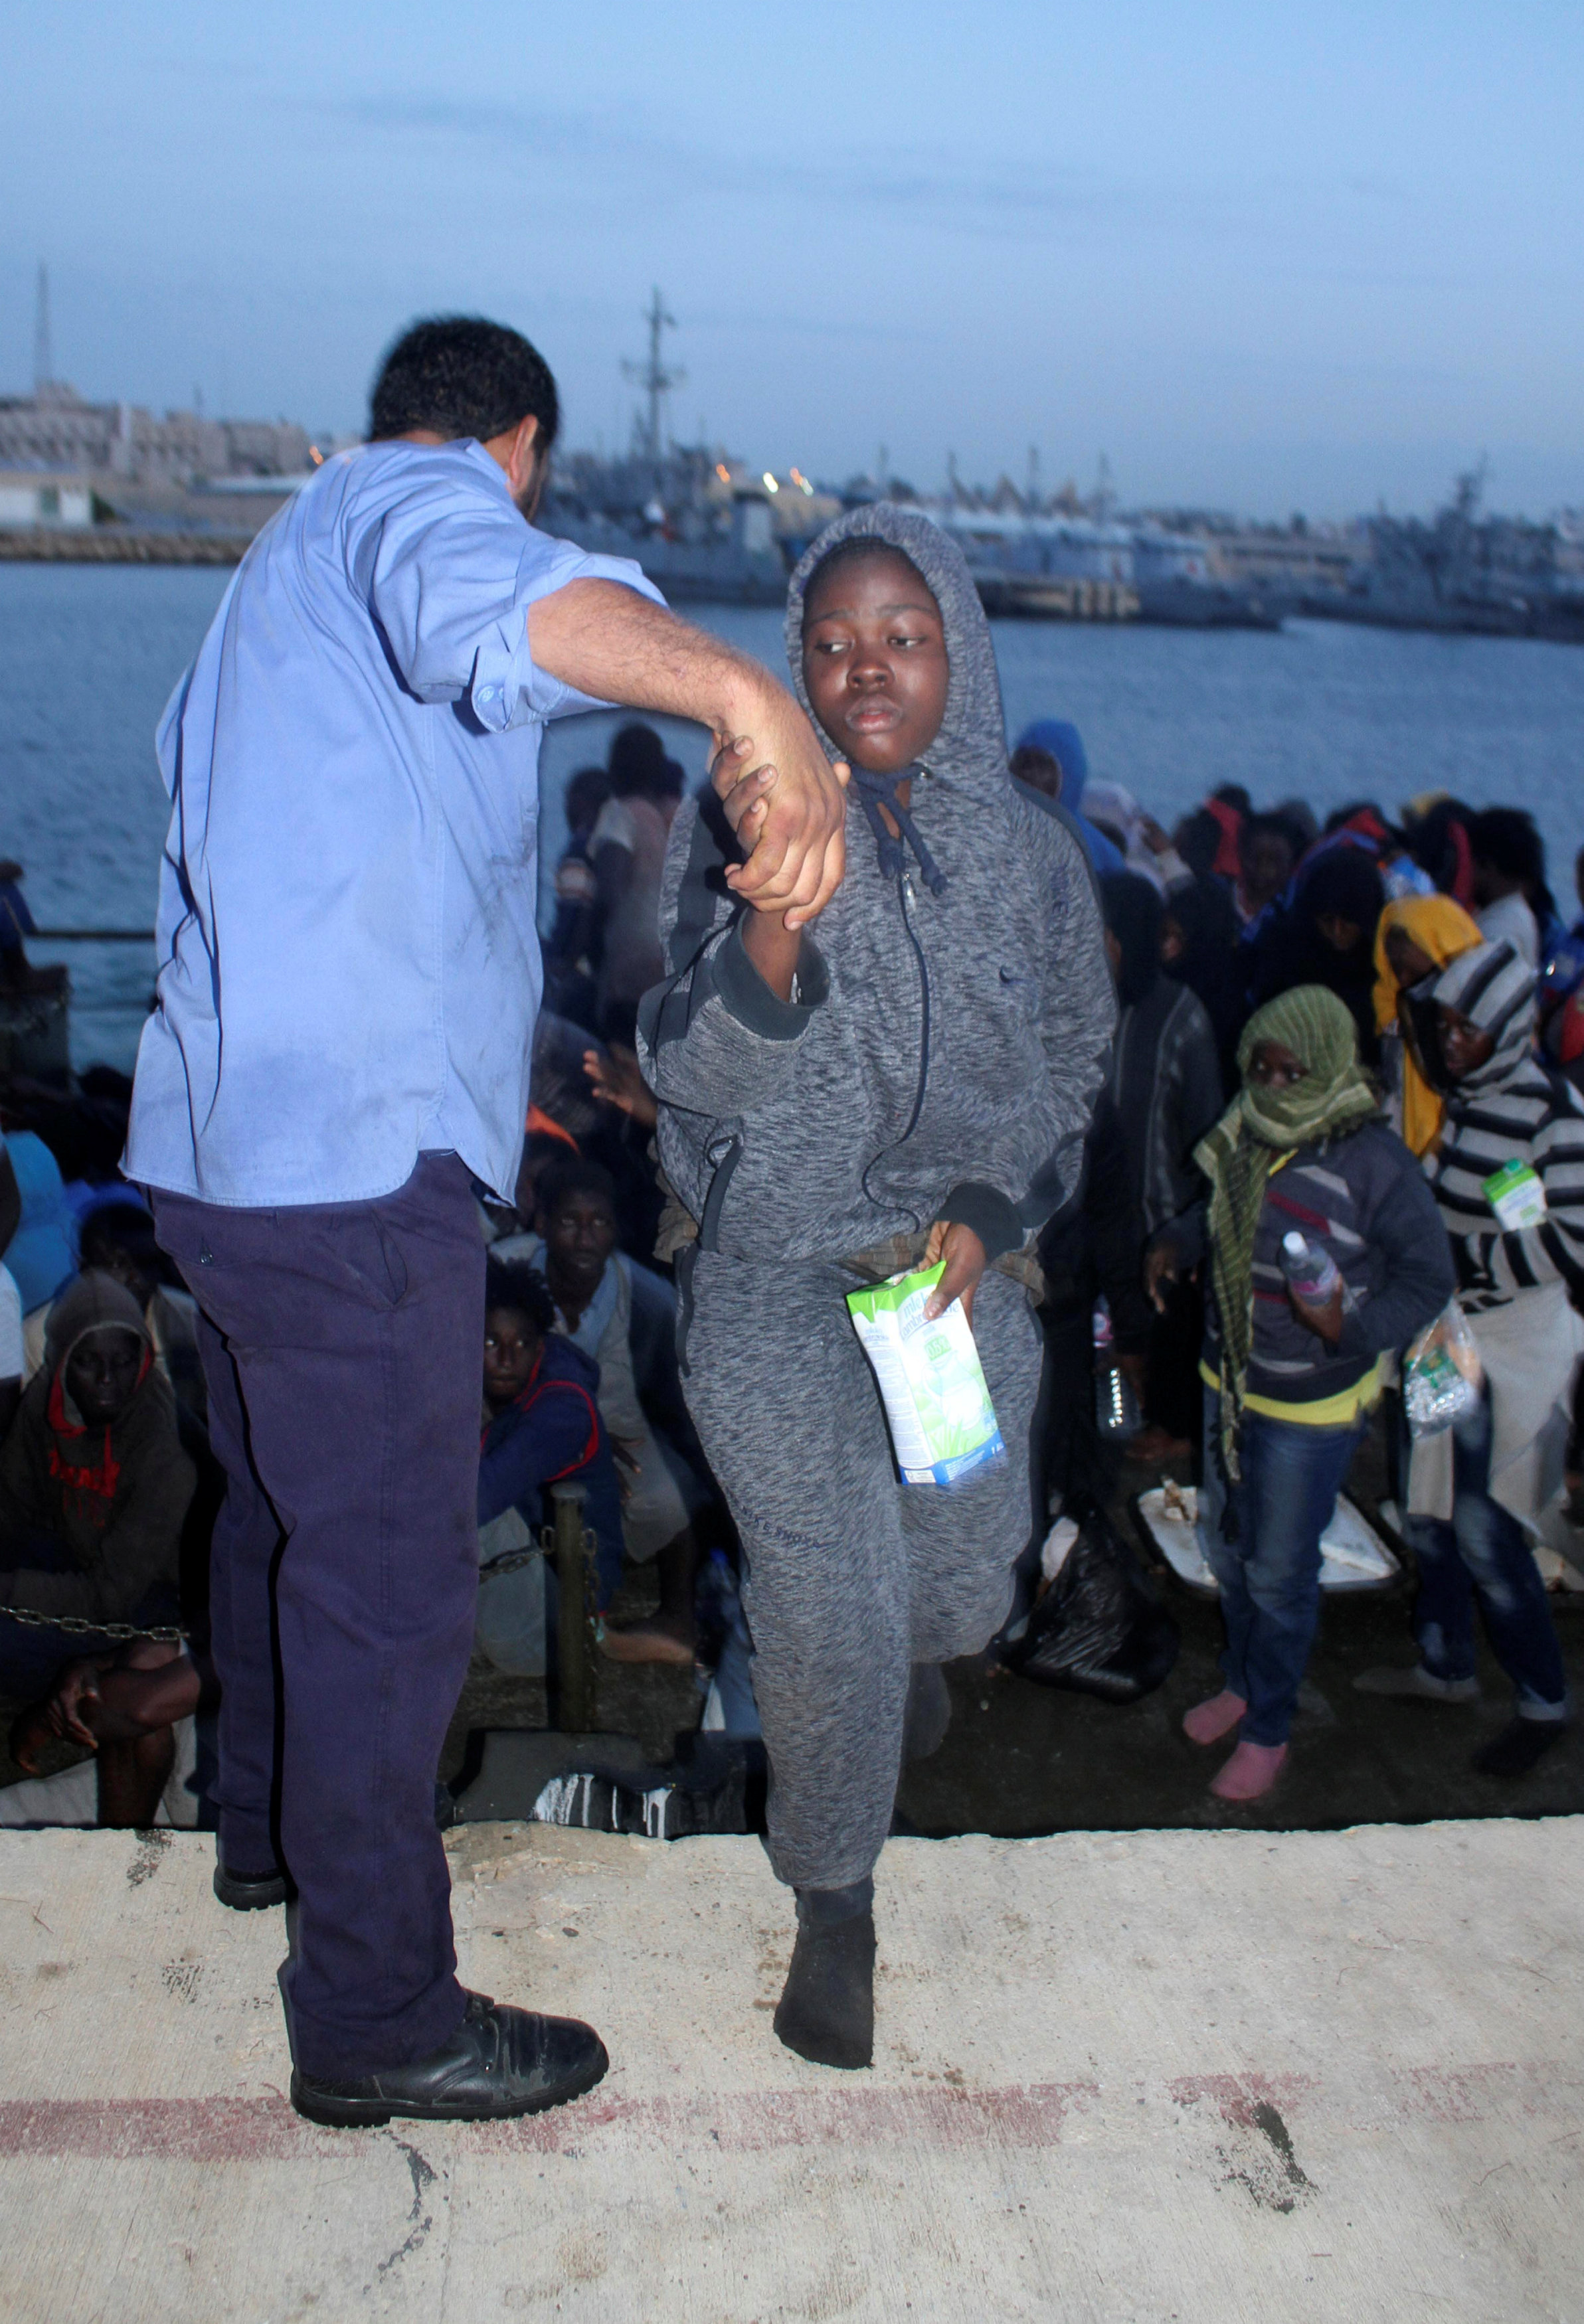 عبور إحدى المهاجرات إلى شواطئ ليبيا عقب انقاذ حياتها